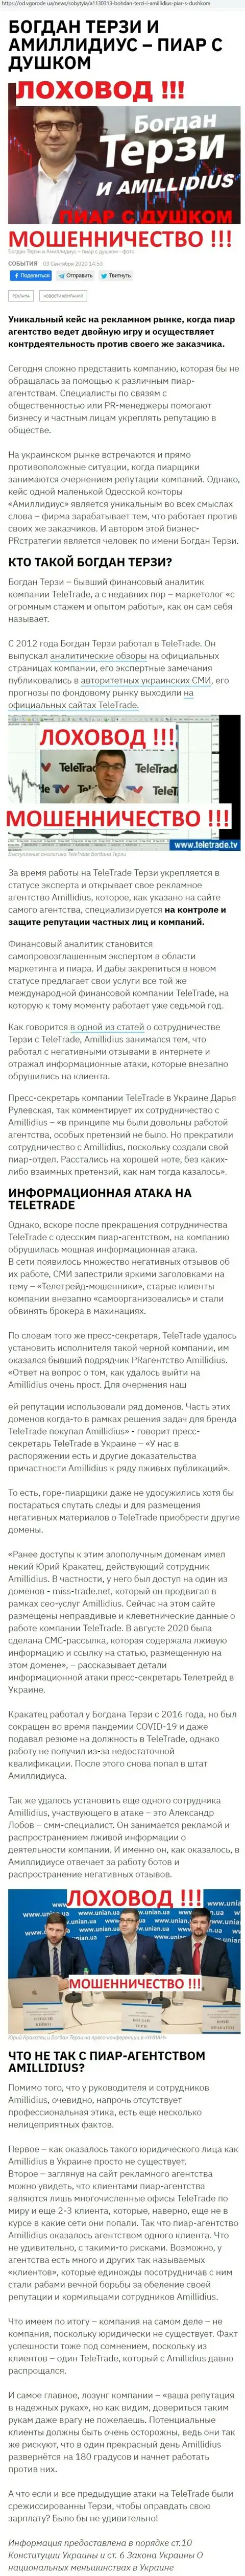 Богдан Терзи ненадежный партнёр, данные со слов бывшего работника фирмы Амиллидиус Ком